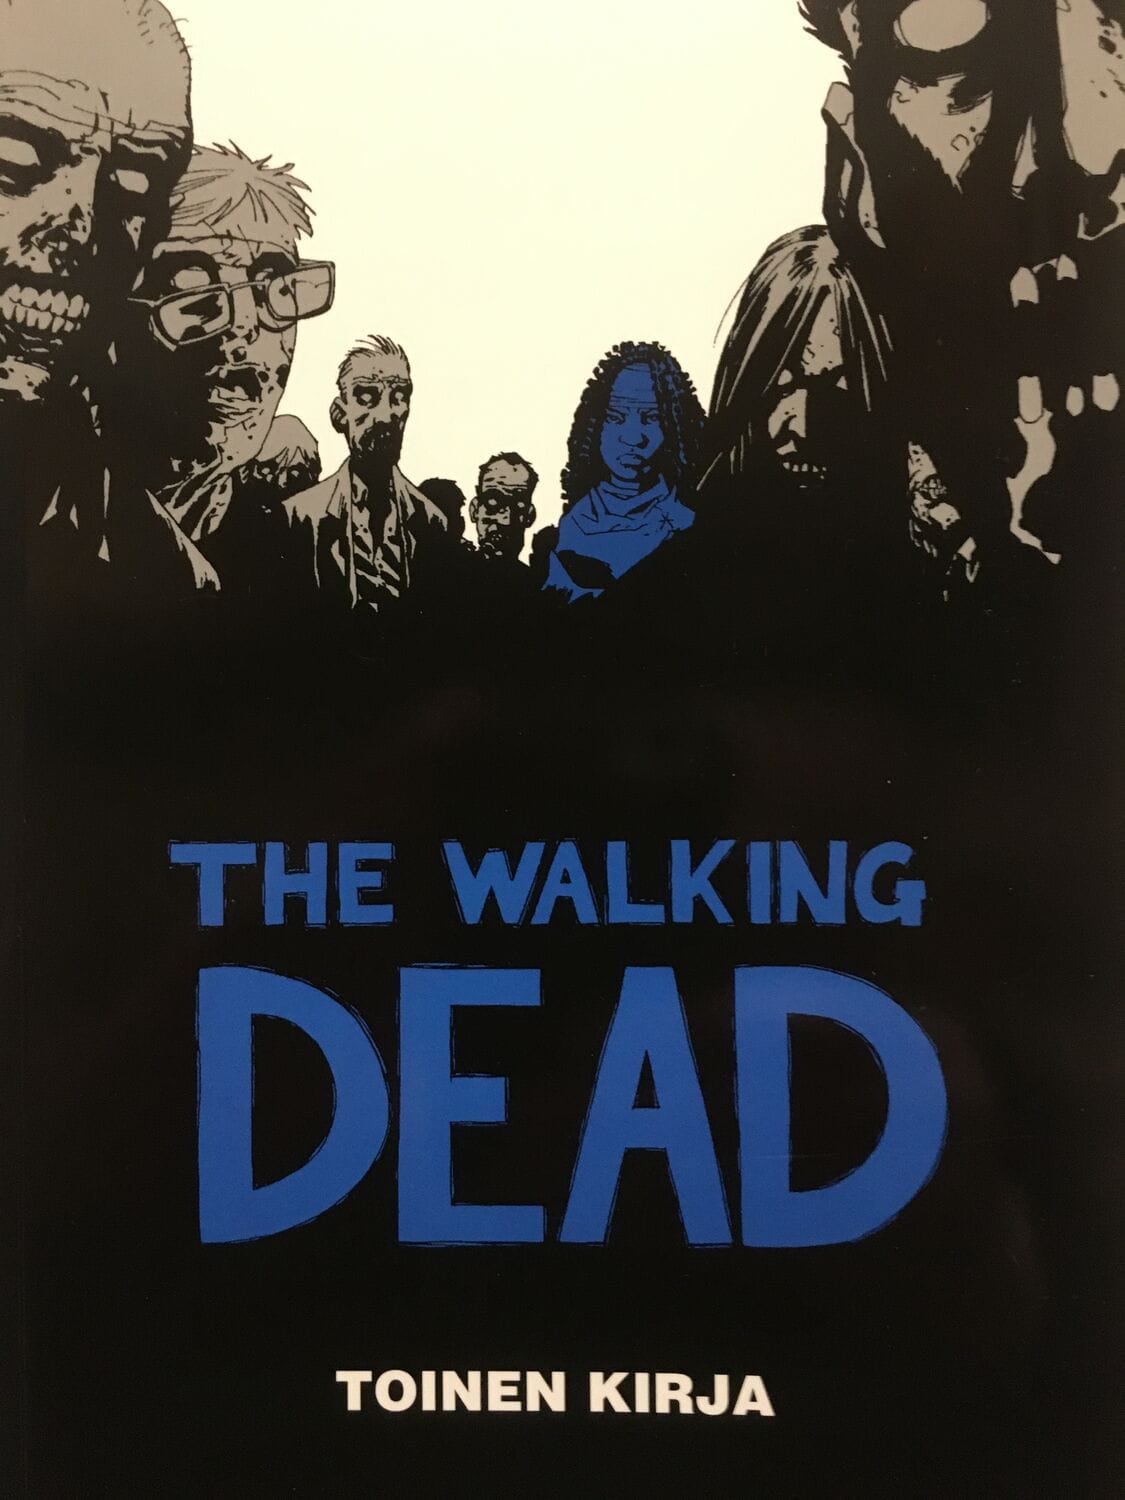 The Walking Dead: Toinen kirja